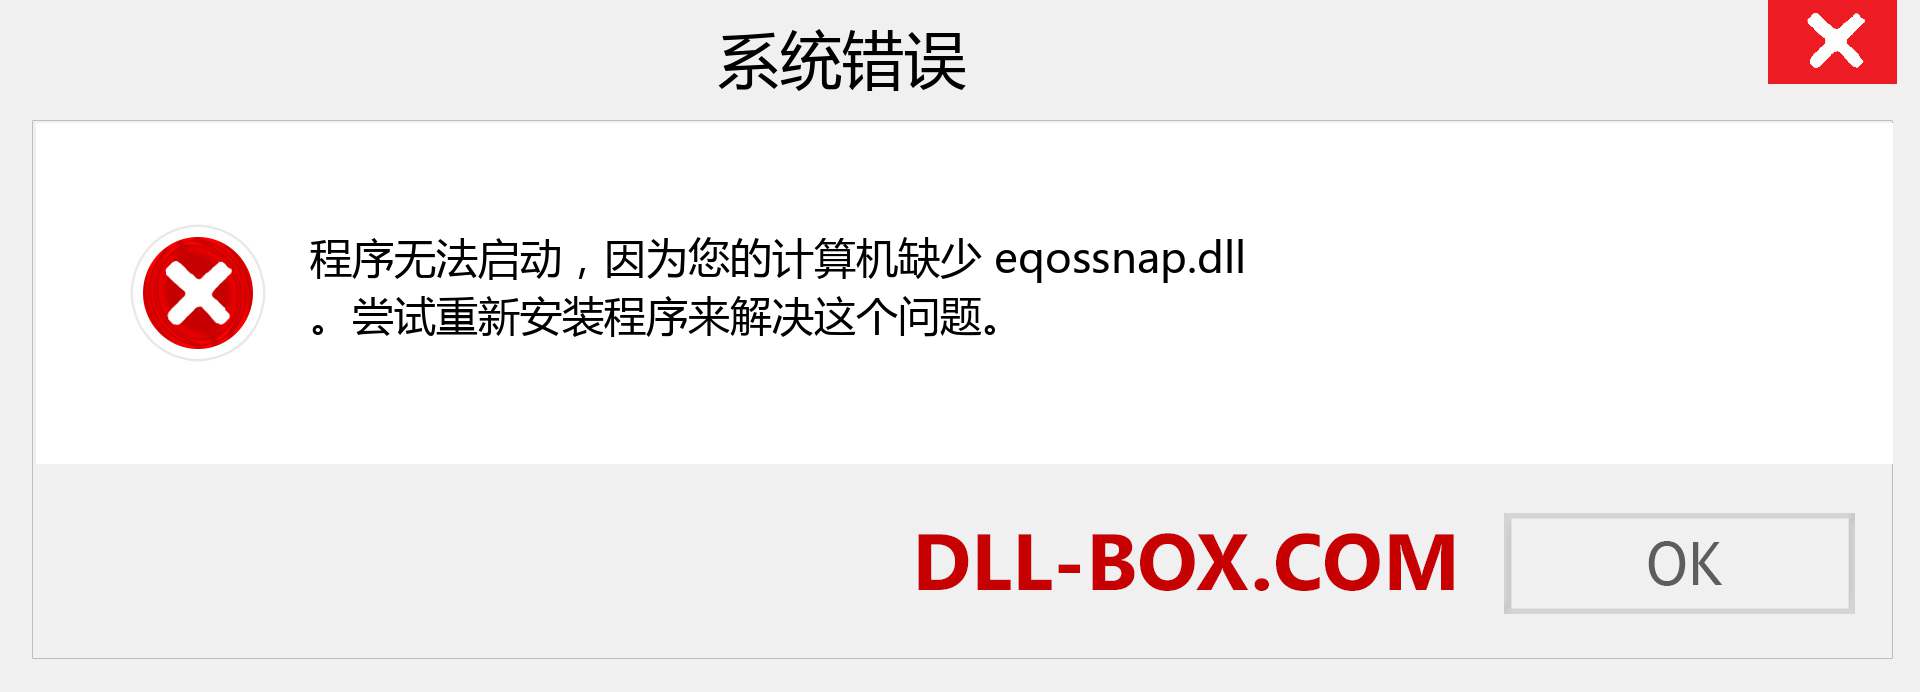 eqossnap.dll 文件丢失？。 适用于 Windows 7、8、10 的下载 - 修复 Windows、照片、图像上的 eqossnap dll 丢失错误